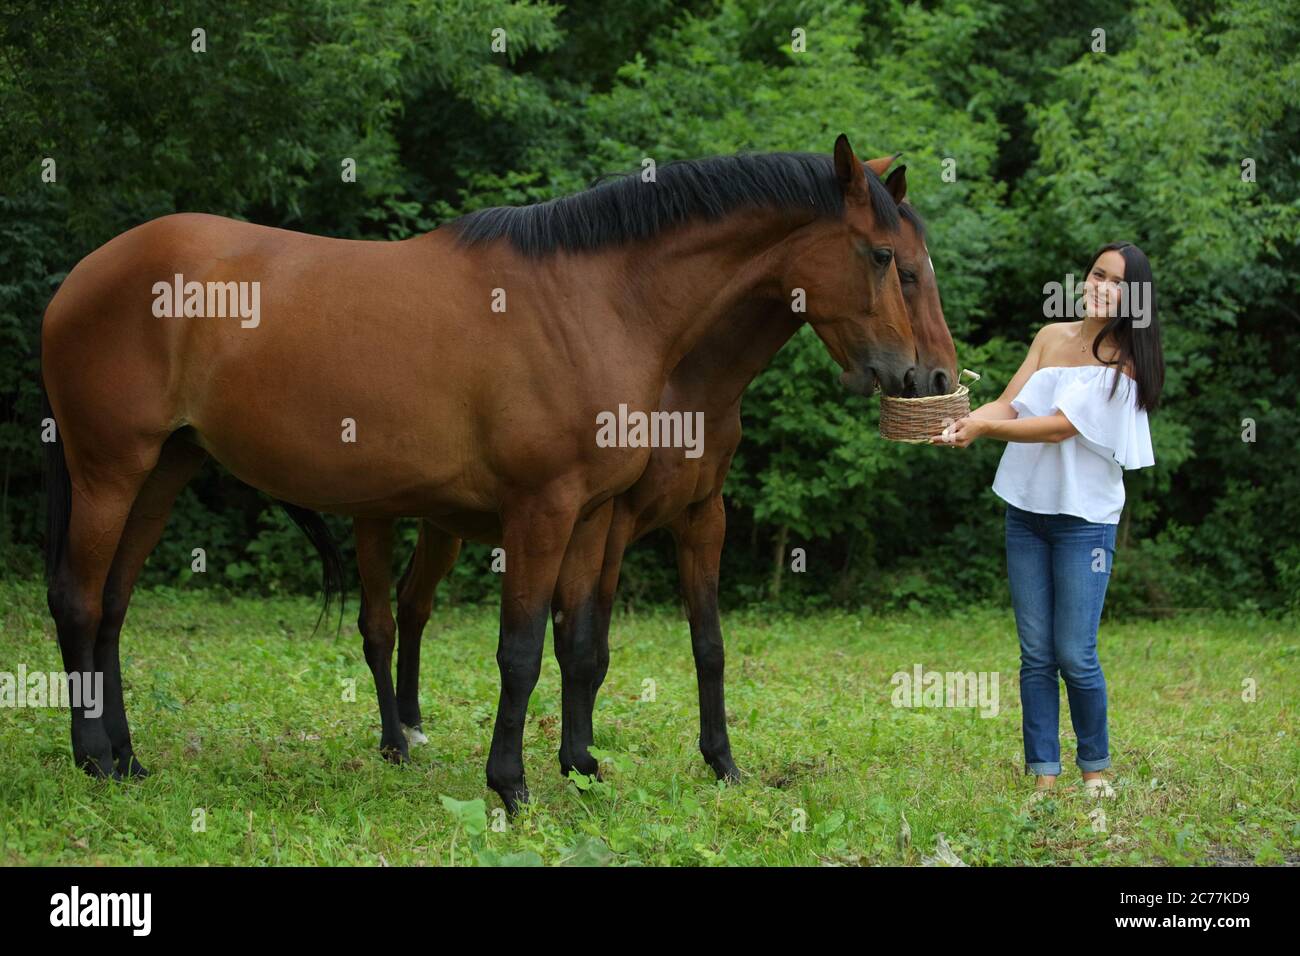 Hübsches Mädchen lächelt streichelt glatt das Pferd`s Mähne auf dem Feld. Zaum, Erwachsener. Stockfoto